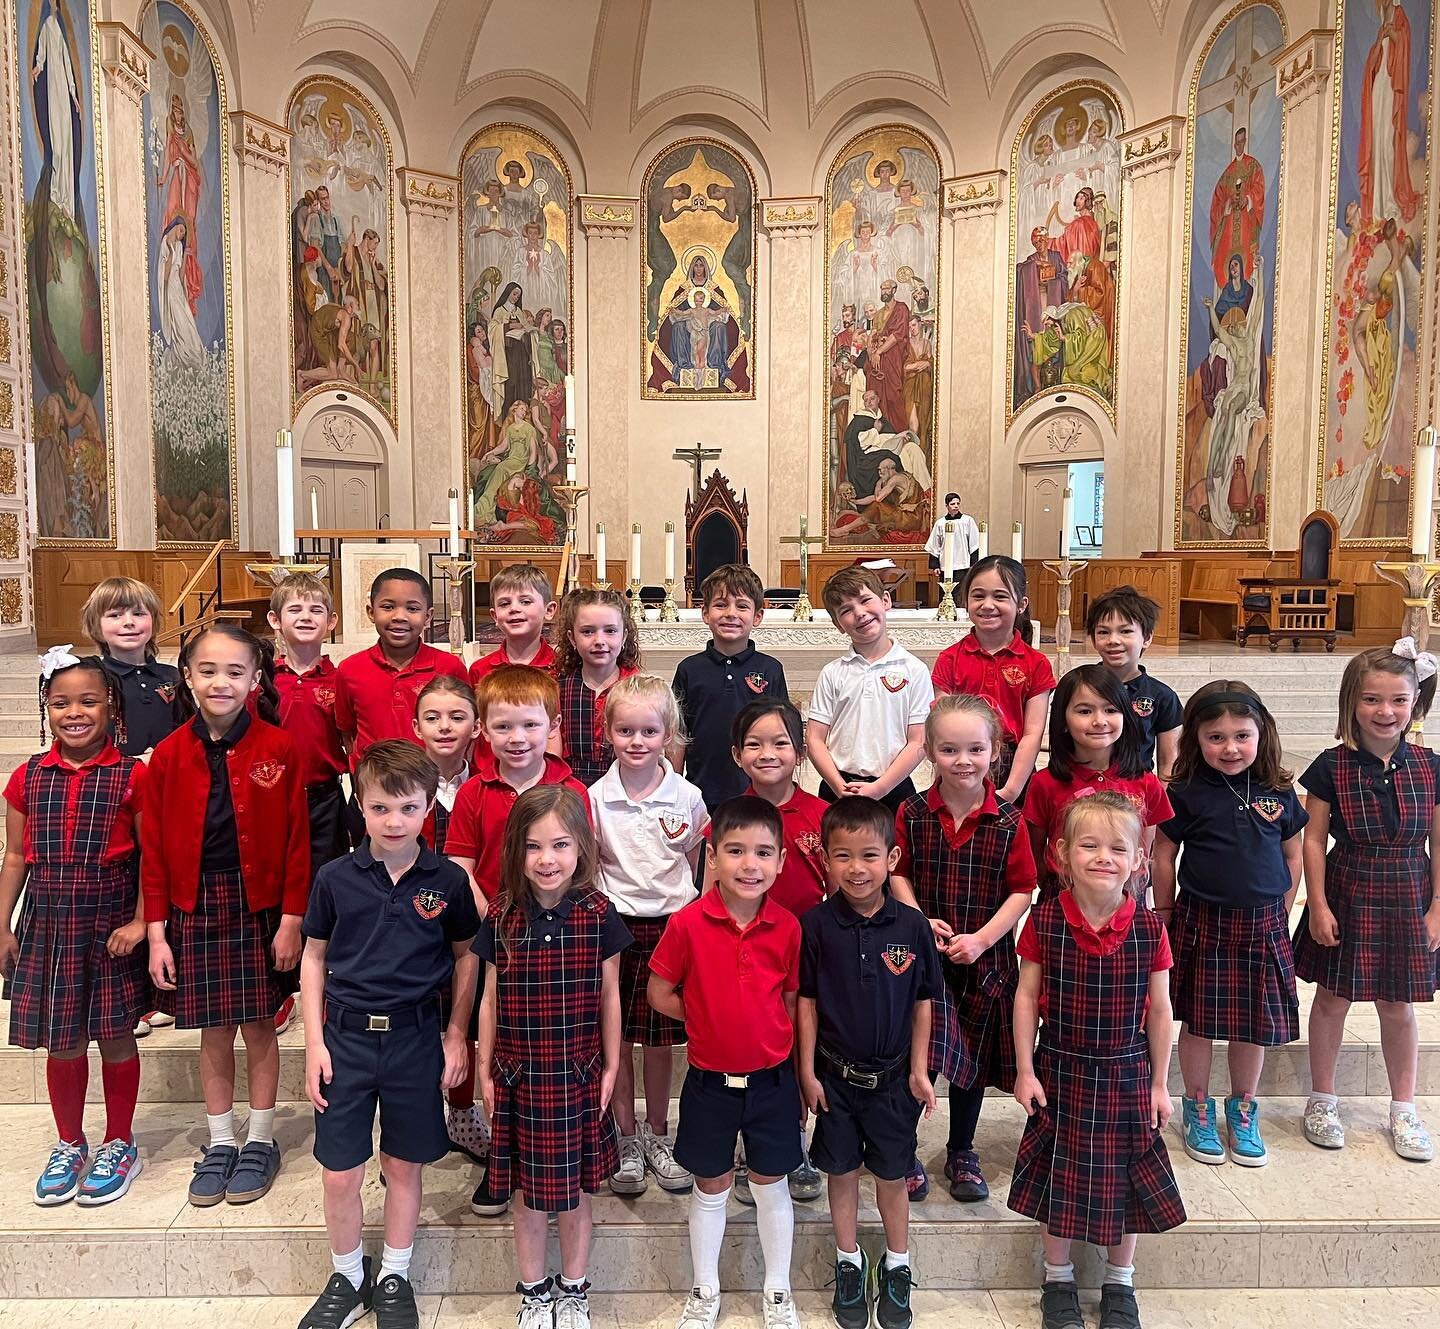 Thank you Kindergarten for leading us in mass ❤️✝️
#cathedralschool #catholicschool #schoolmass #kindergarten